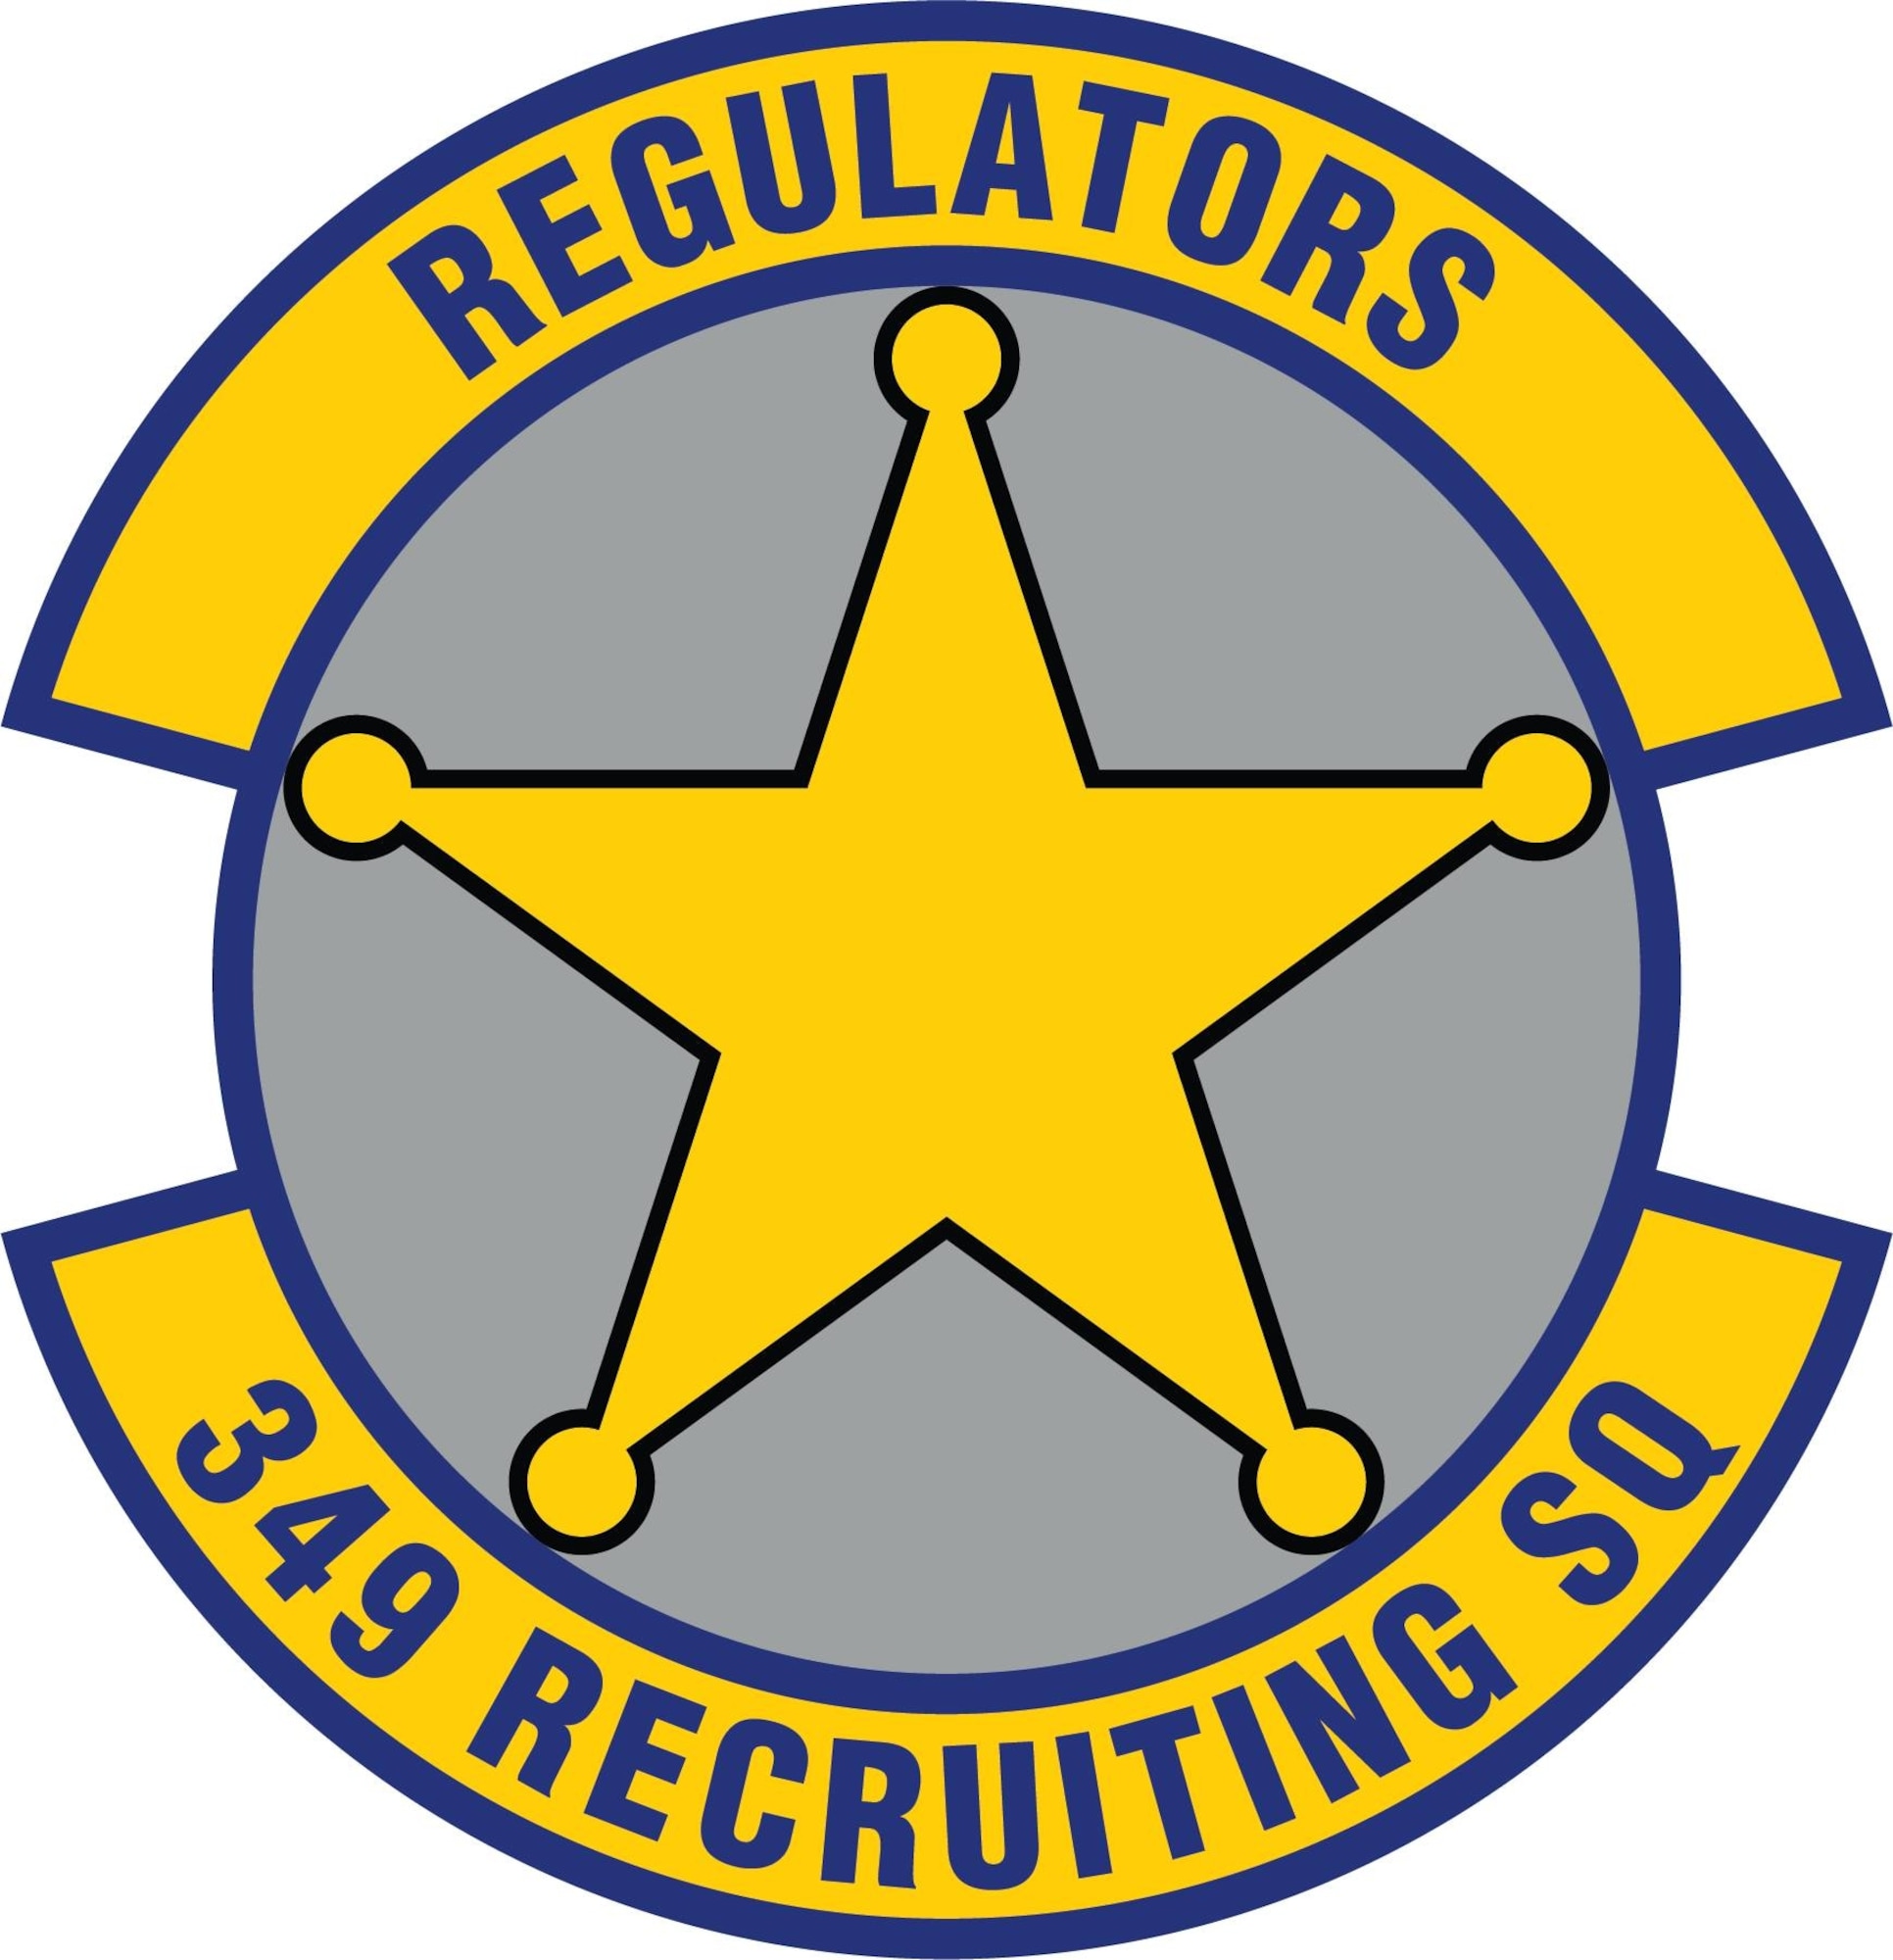 349th Recruiting Squadron